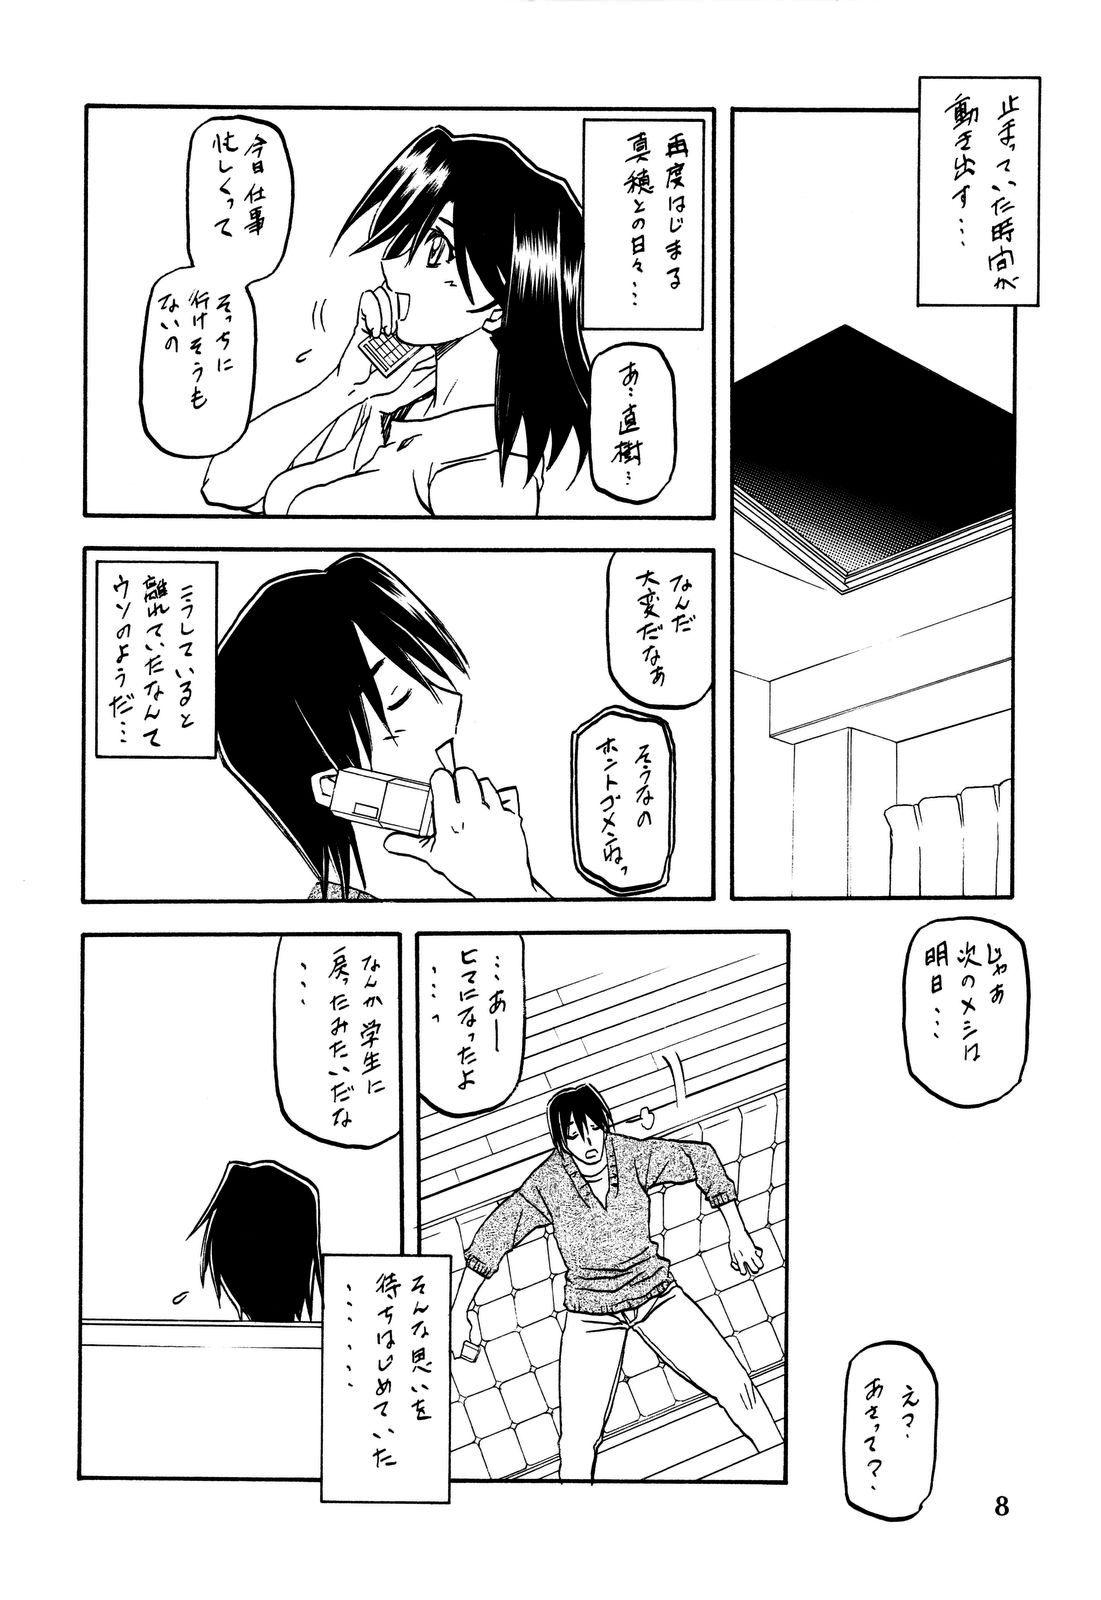 Gaping Akebi no Hana - Akebi no mi Sextoy - Page 8